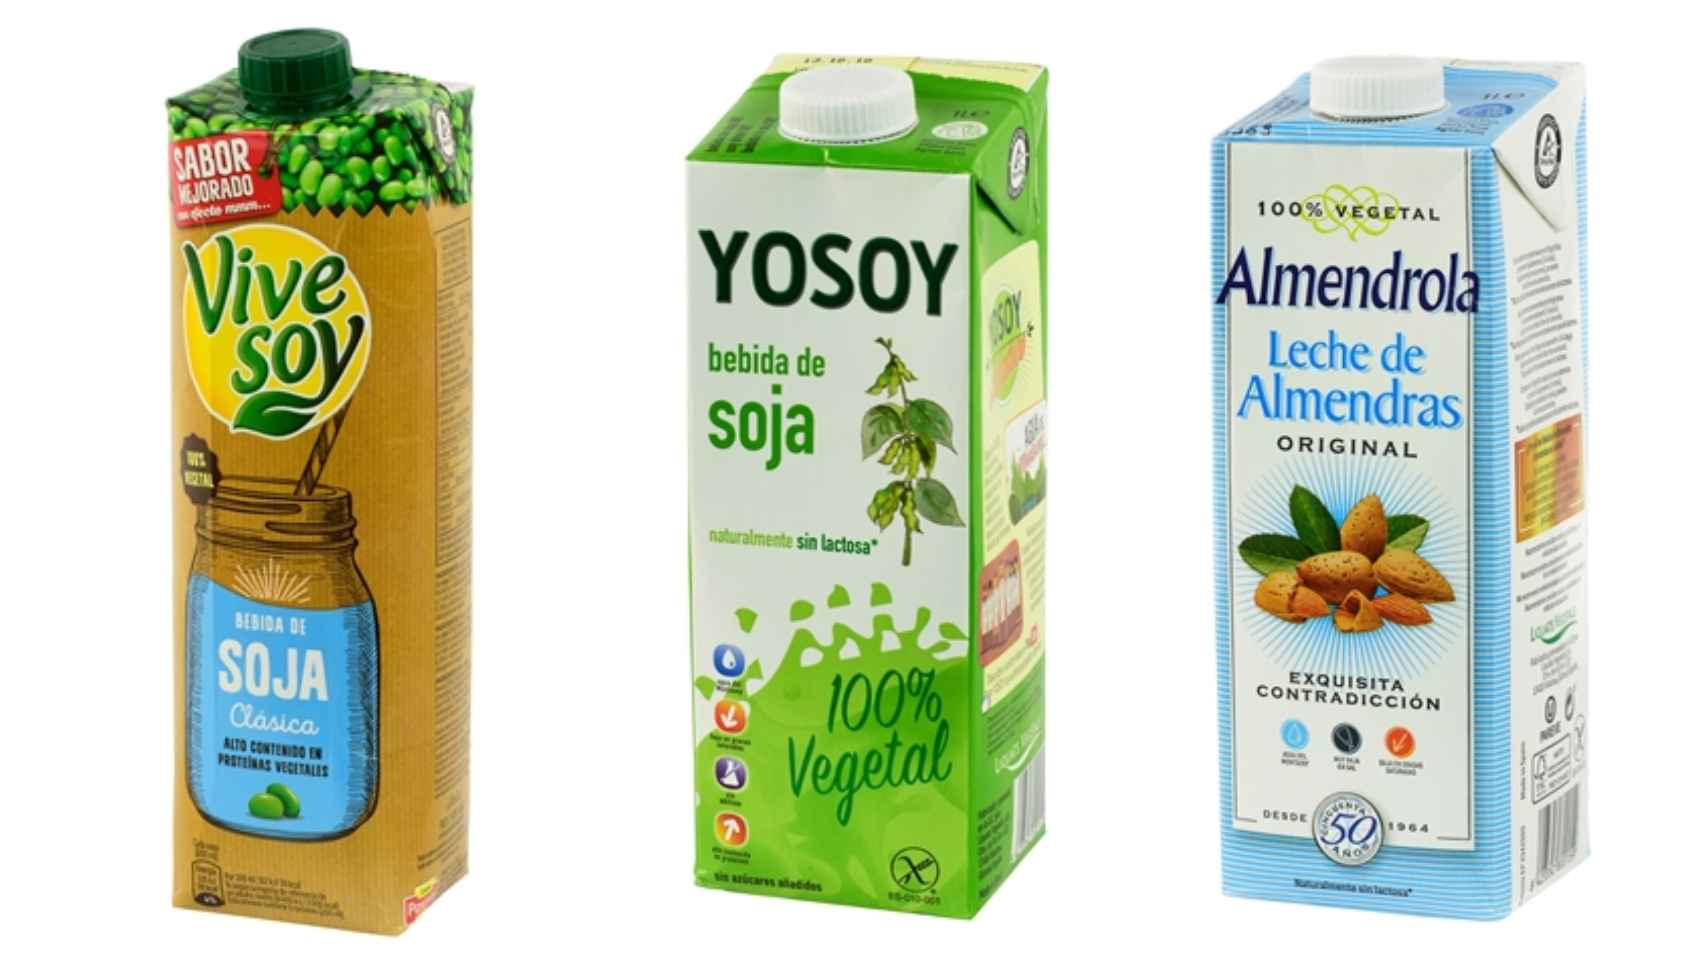 La bebida de soja clásica de Vive Soy, la bebida de soja de Yosoy y la leche de almendras Almendrola Original, que tienen una nota de 68 sobre 100